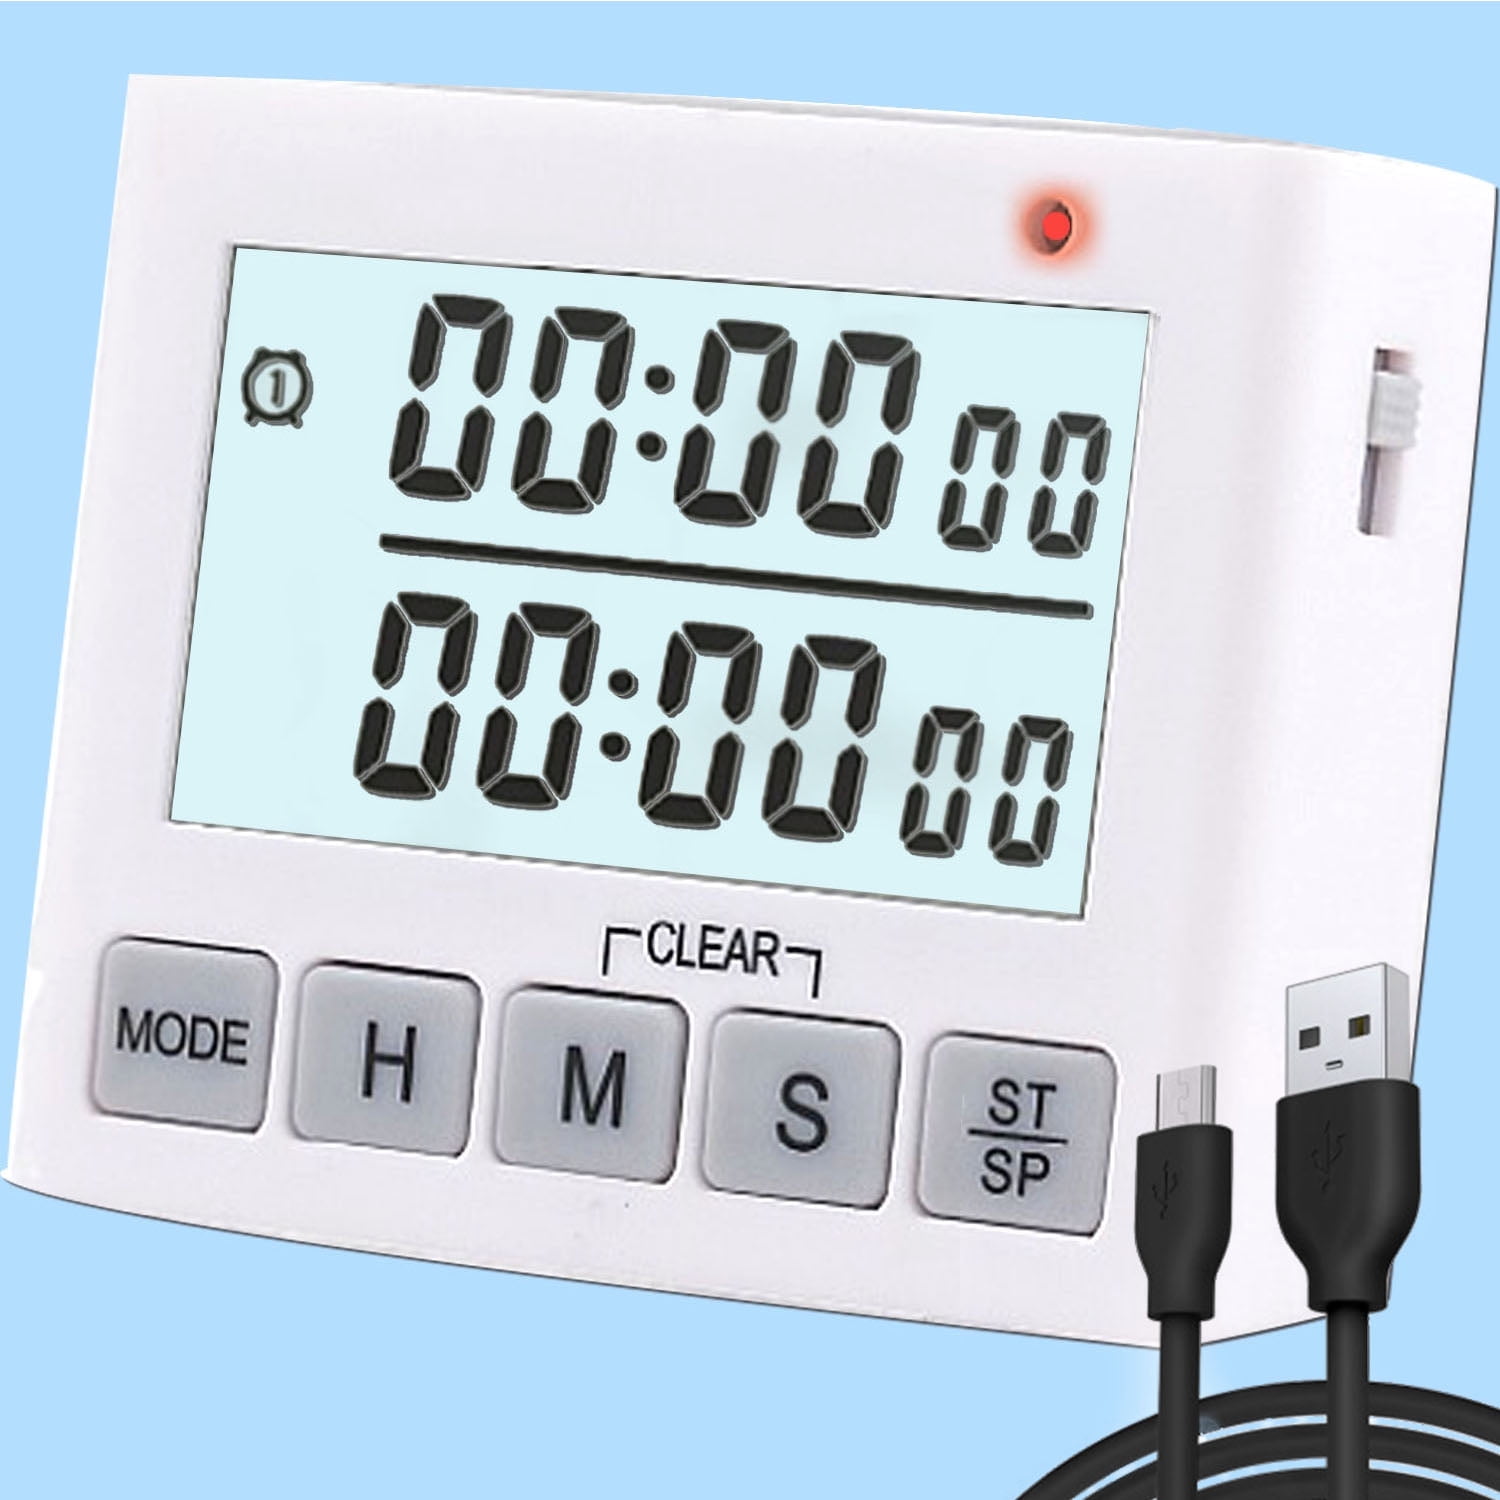 StonyLab 2pk Digital Timer, 2 Pack Basic High Decibel Loud Alarm Countdown Timer Digital Timer Kitchen Timer Event Timer with Magnetic Back and Large